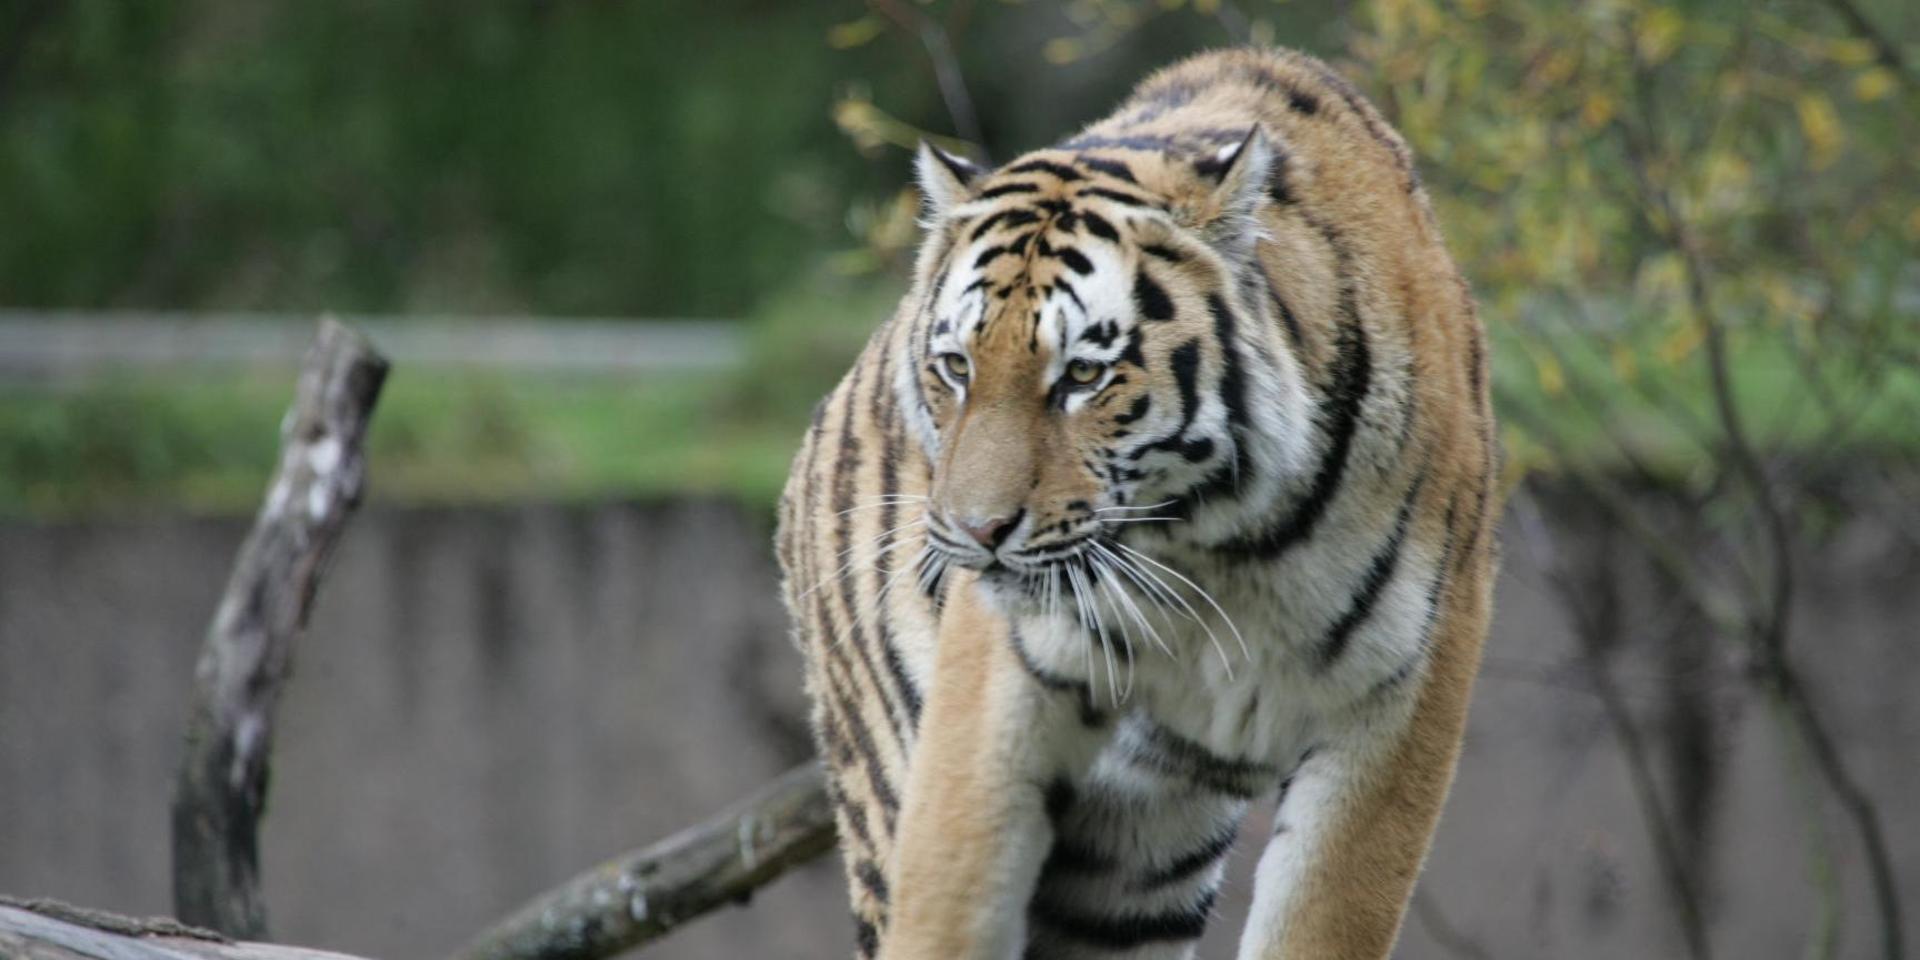 Corona på djurpark, tigrar och lejon sjuka i covid-19.